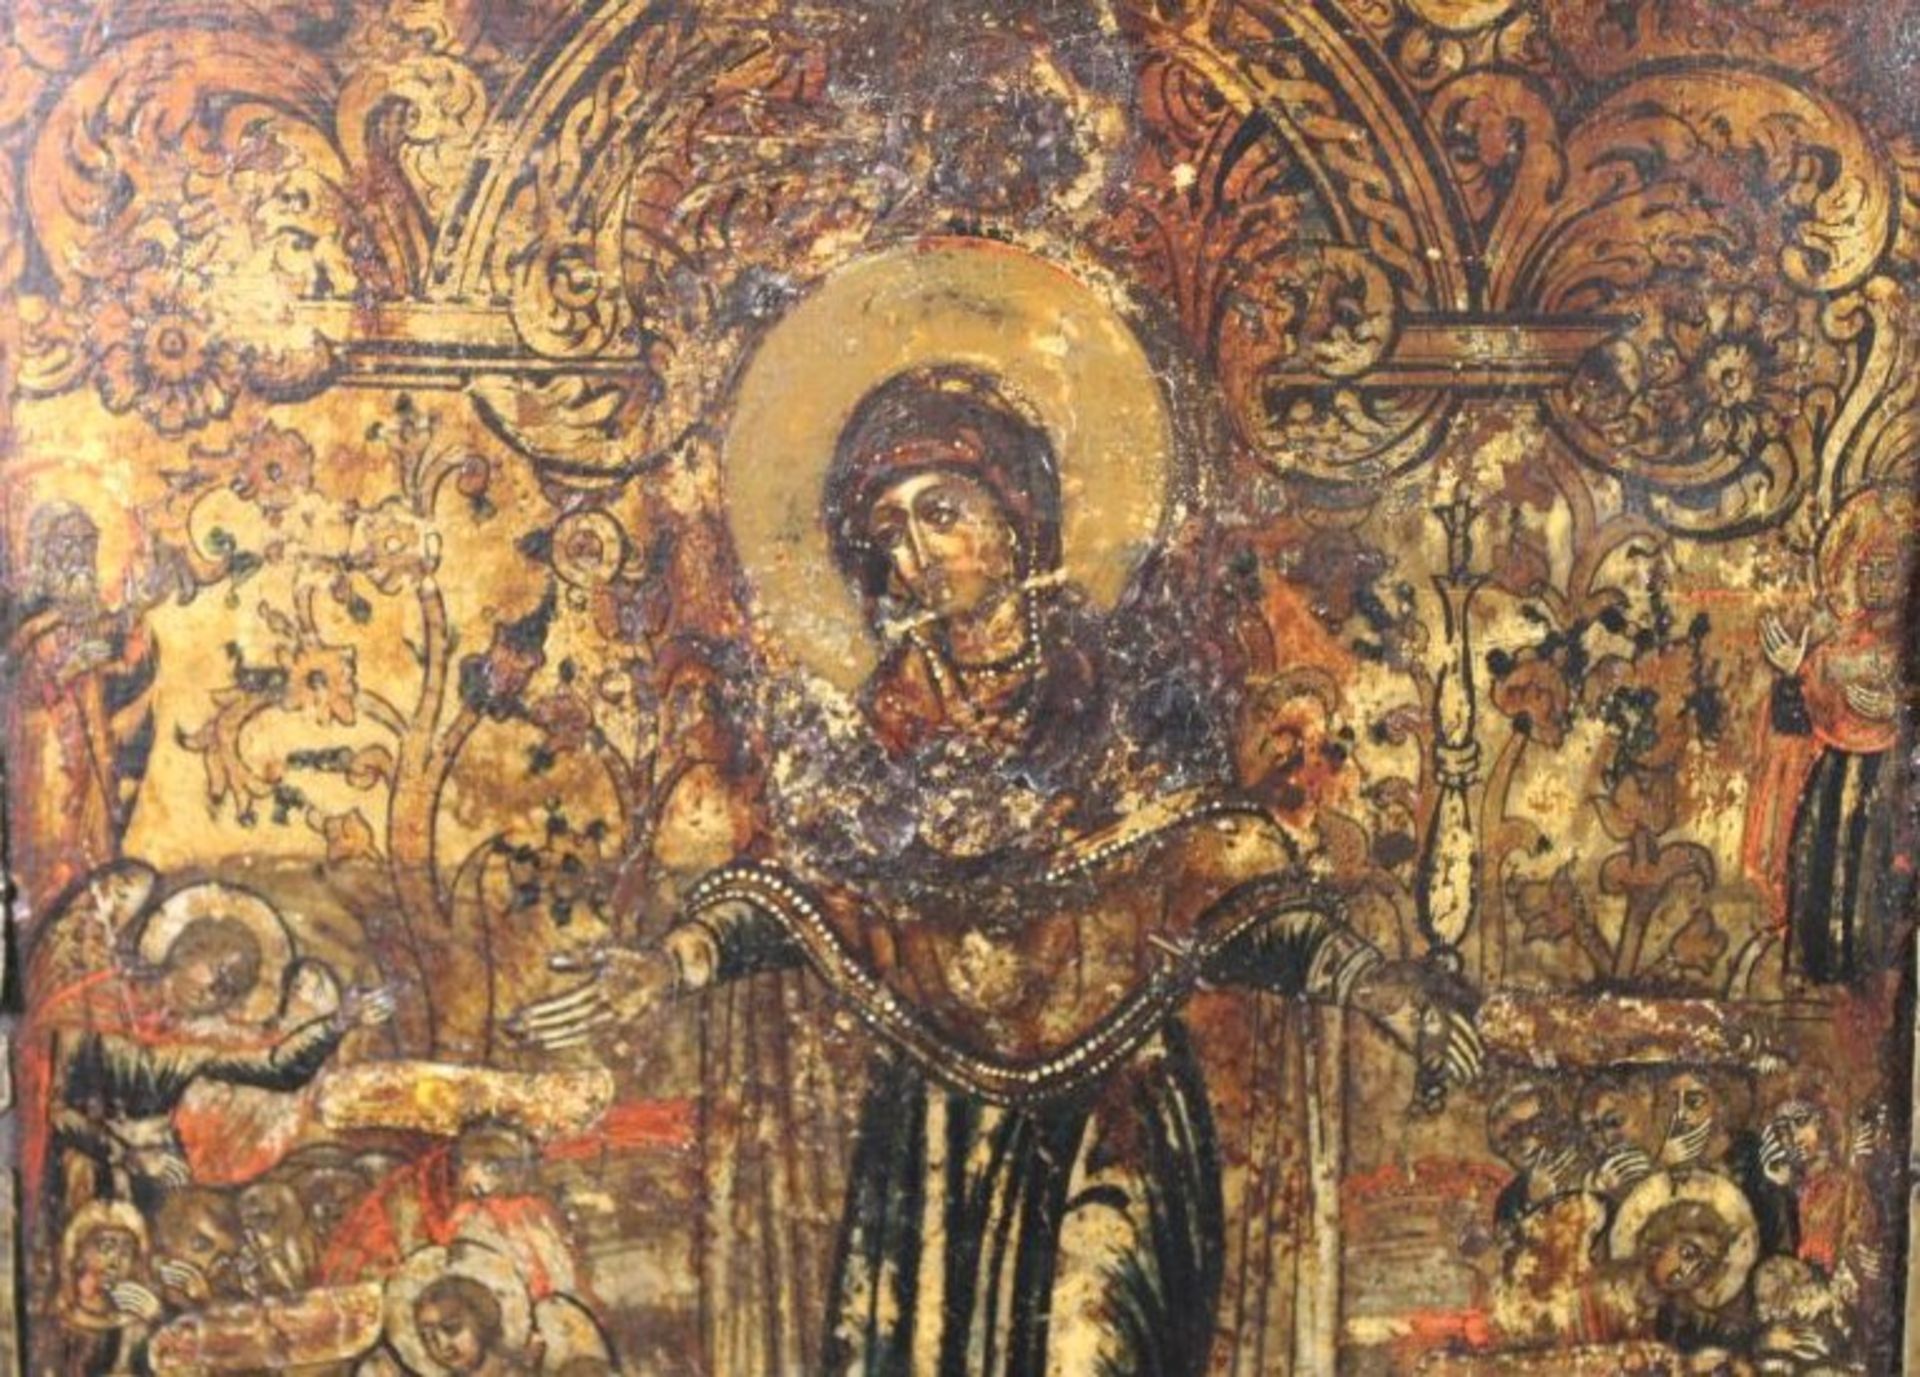 russische Ikone "Muttergottes von der Passion", 18. Jhd., 31 x 26cm, verso Beschreibung. - Bild 2 aus 3